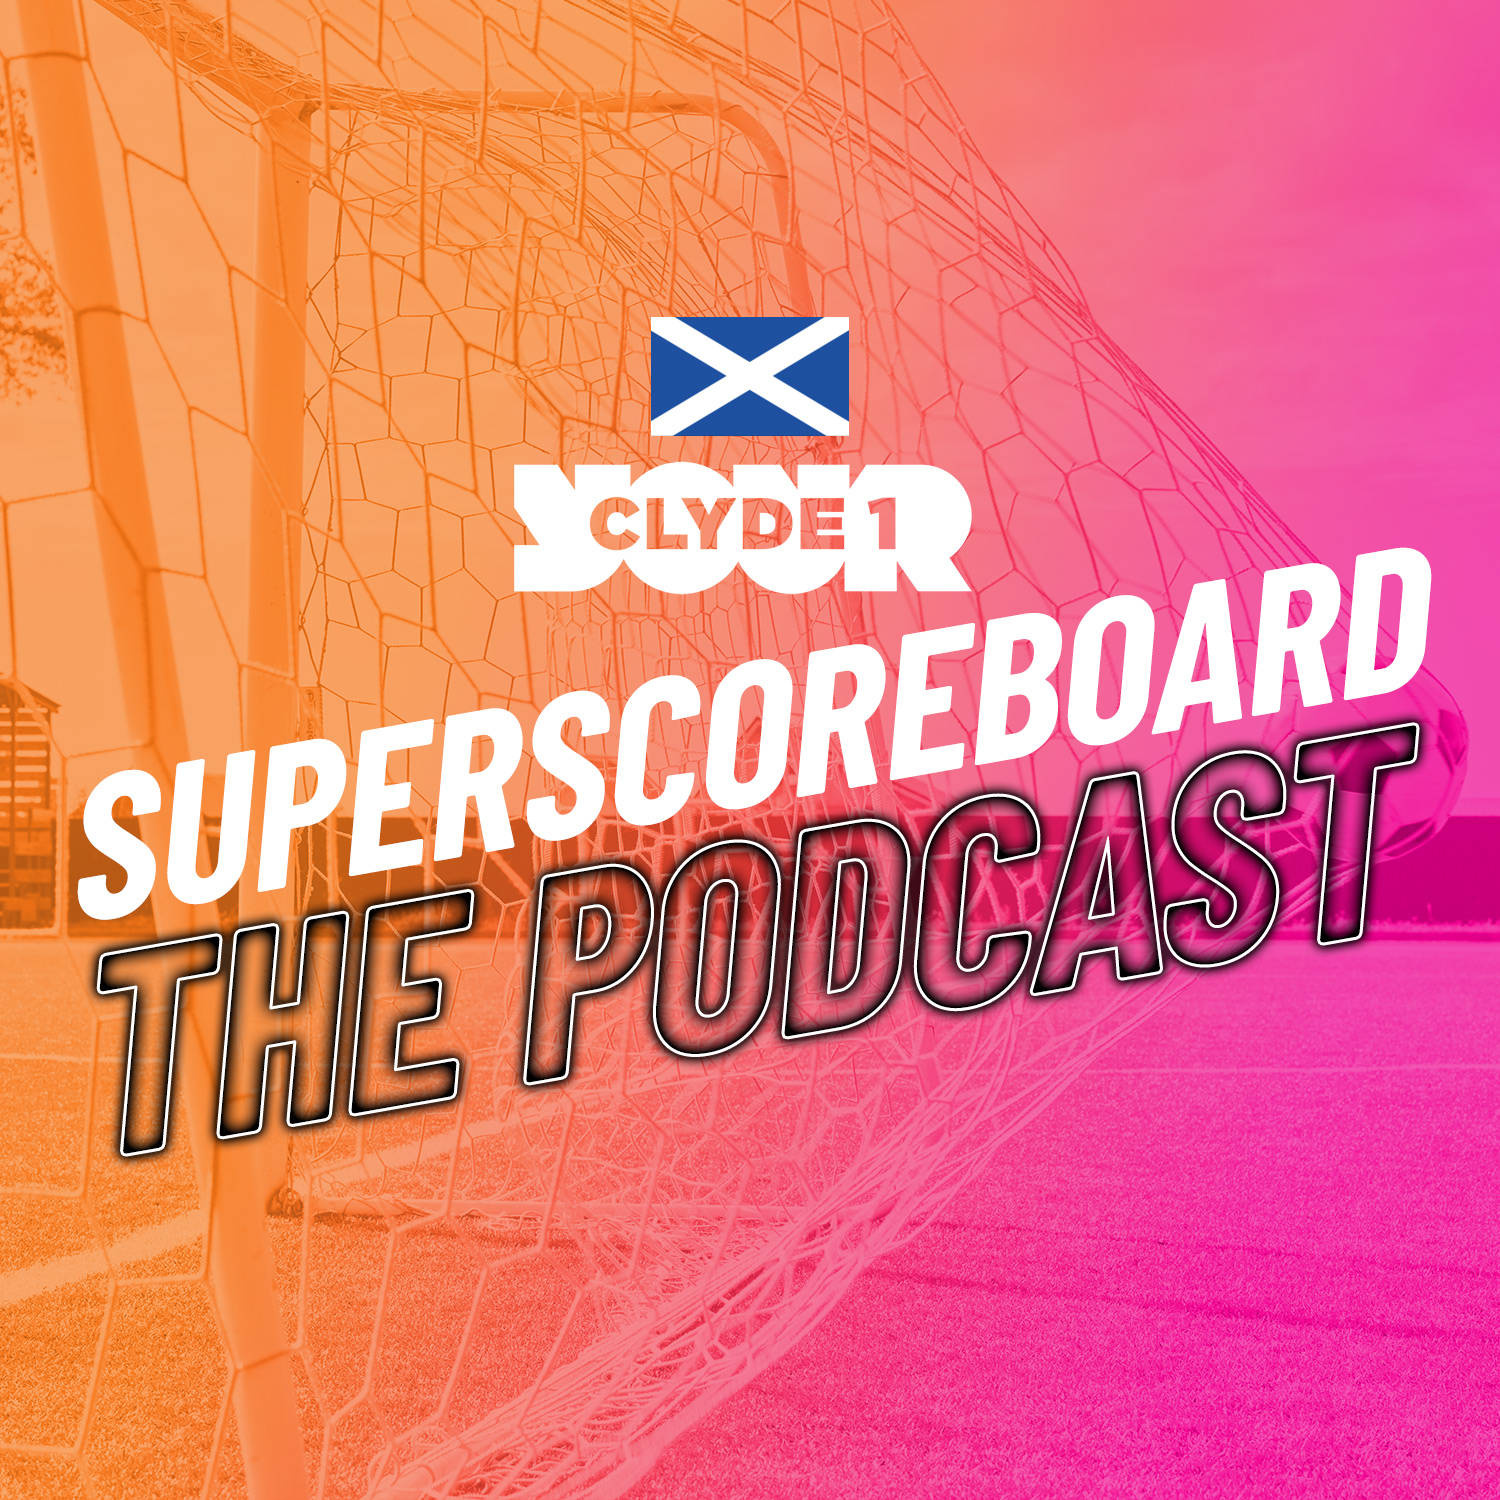 Sunday 3rd December Clyde 1 Superscoreboard – Part 2